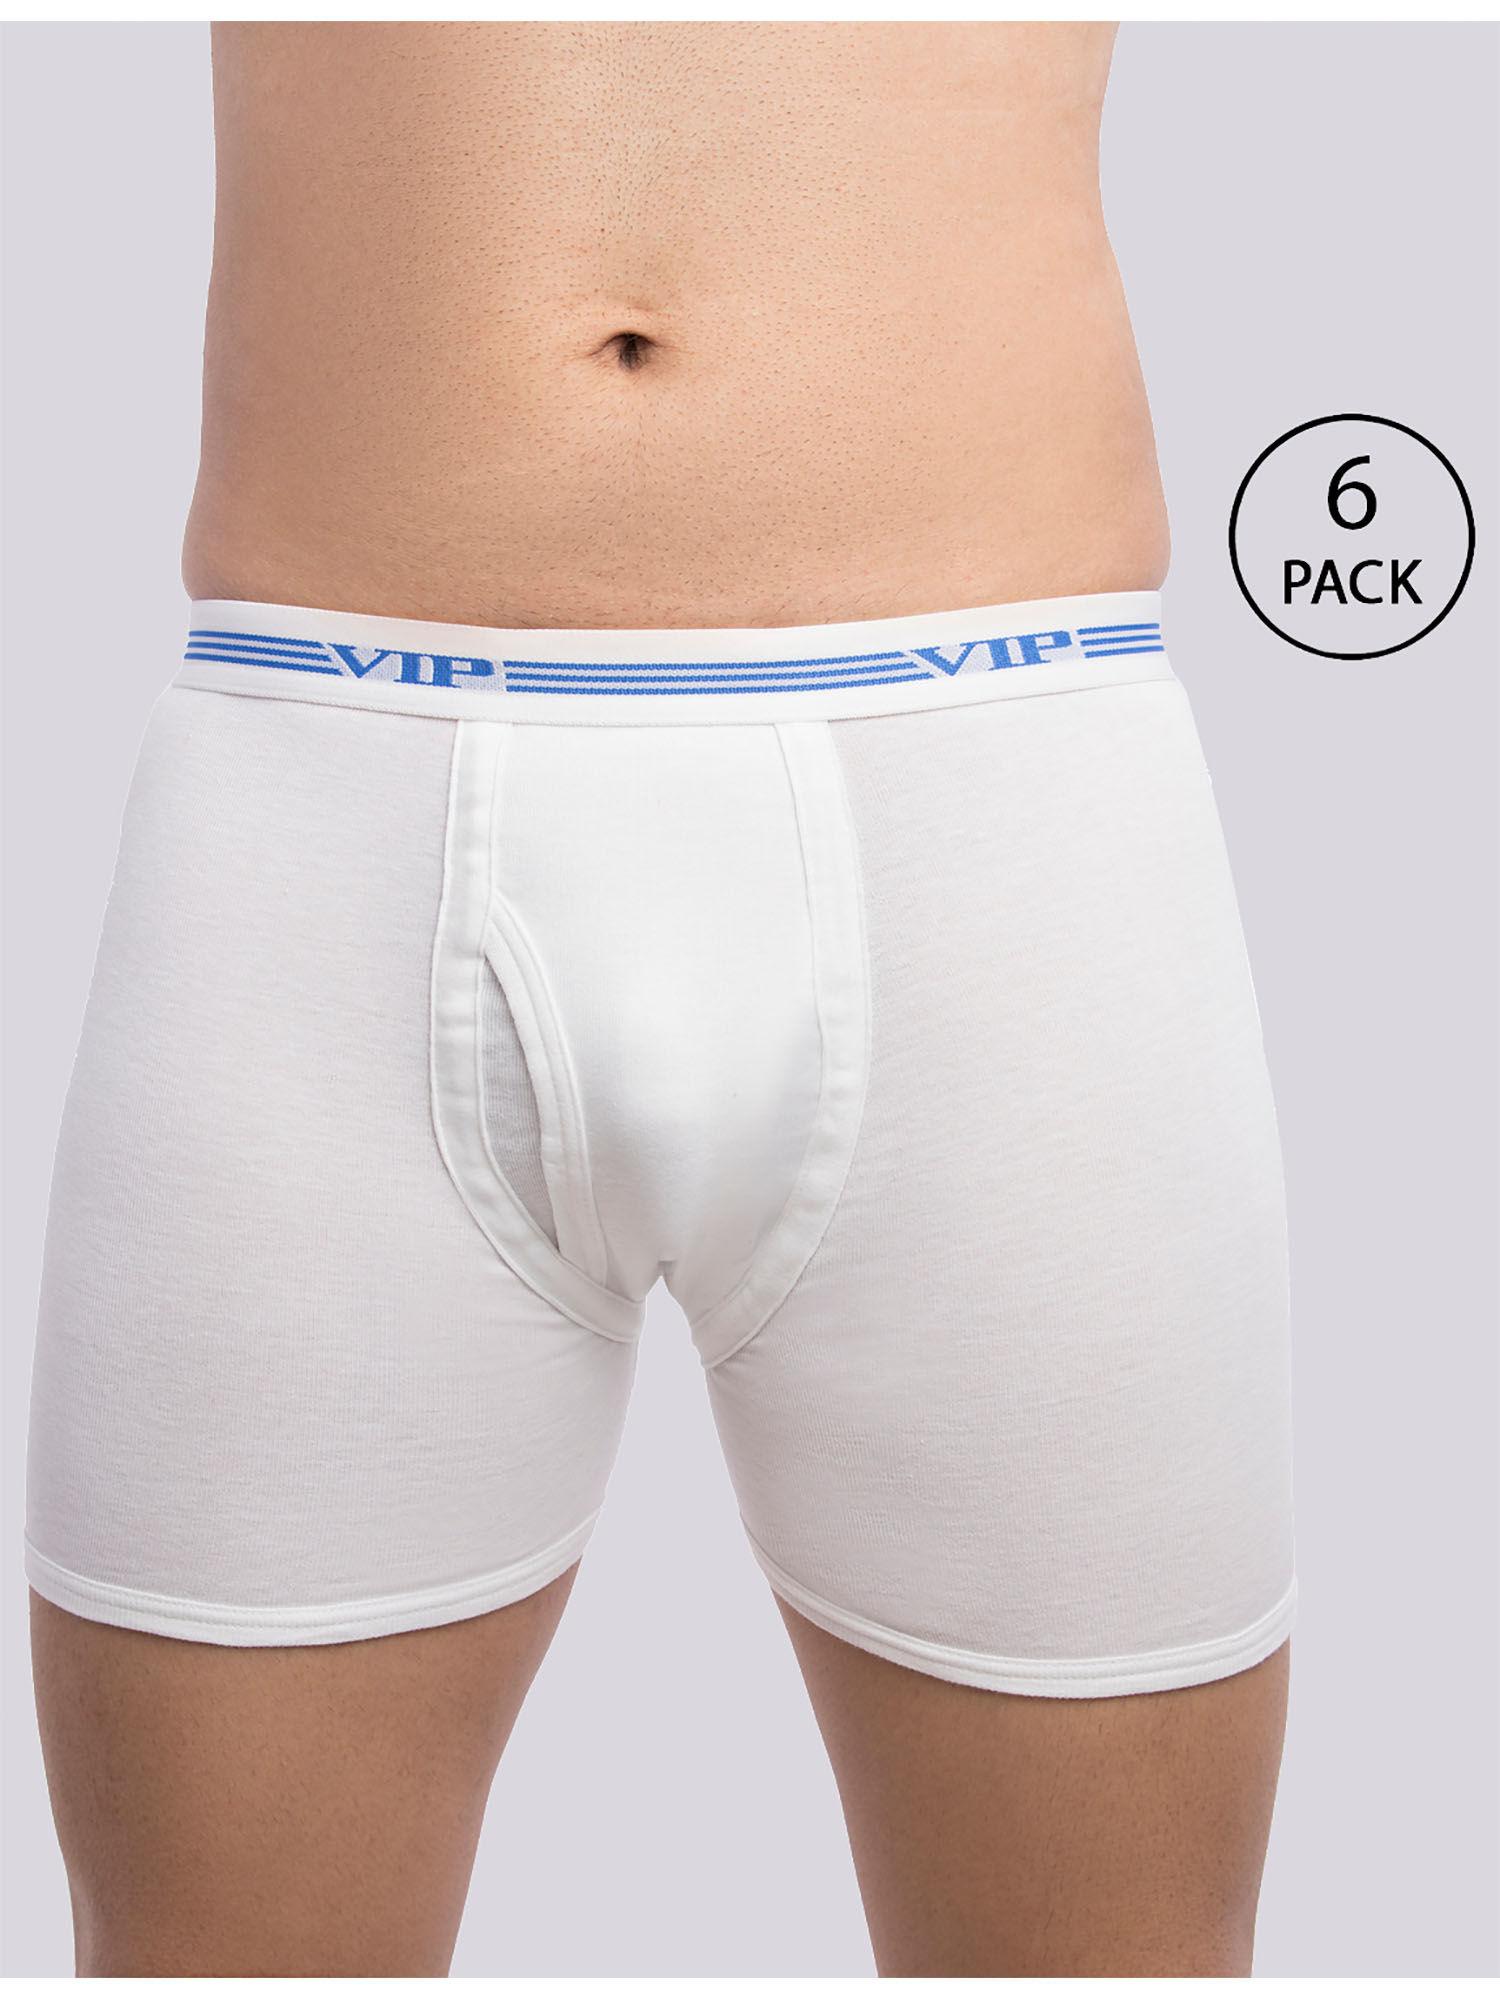 men's advanta solid white 100% cotton rib trunks (pack of 6)